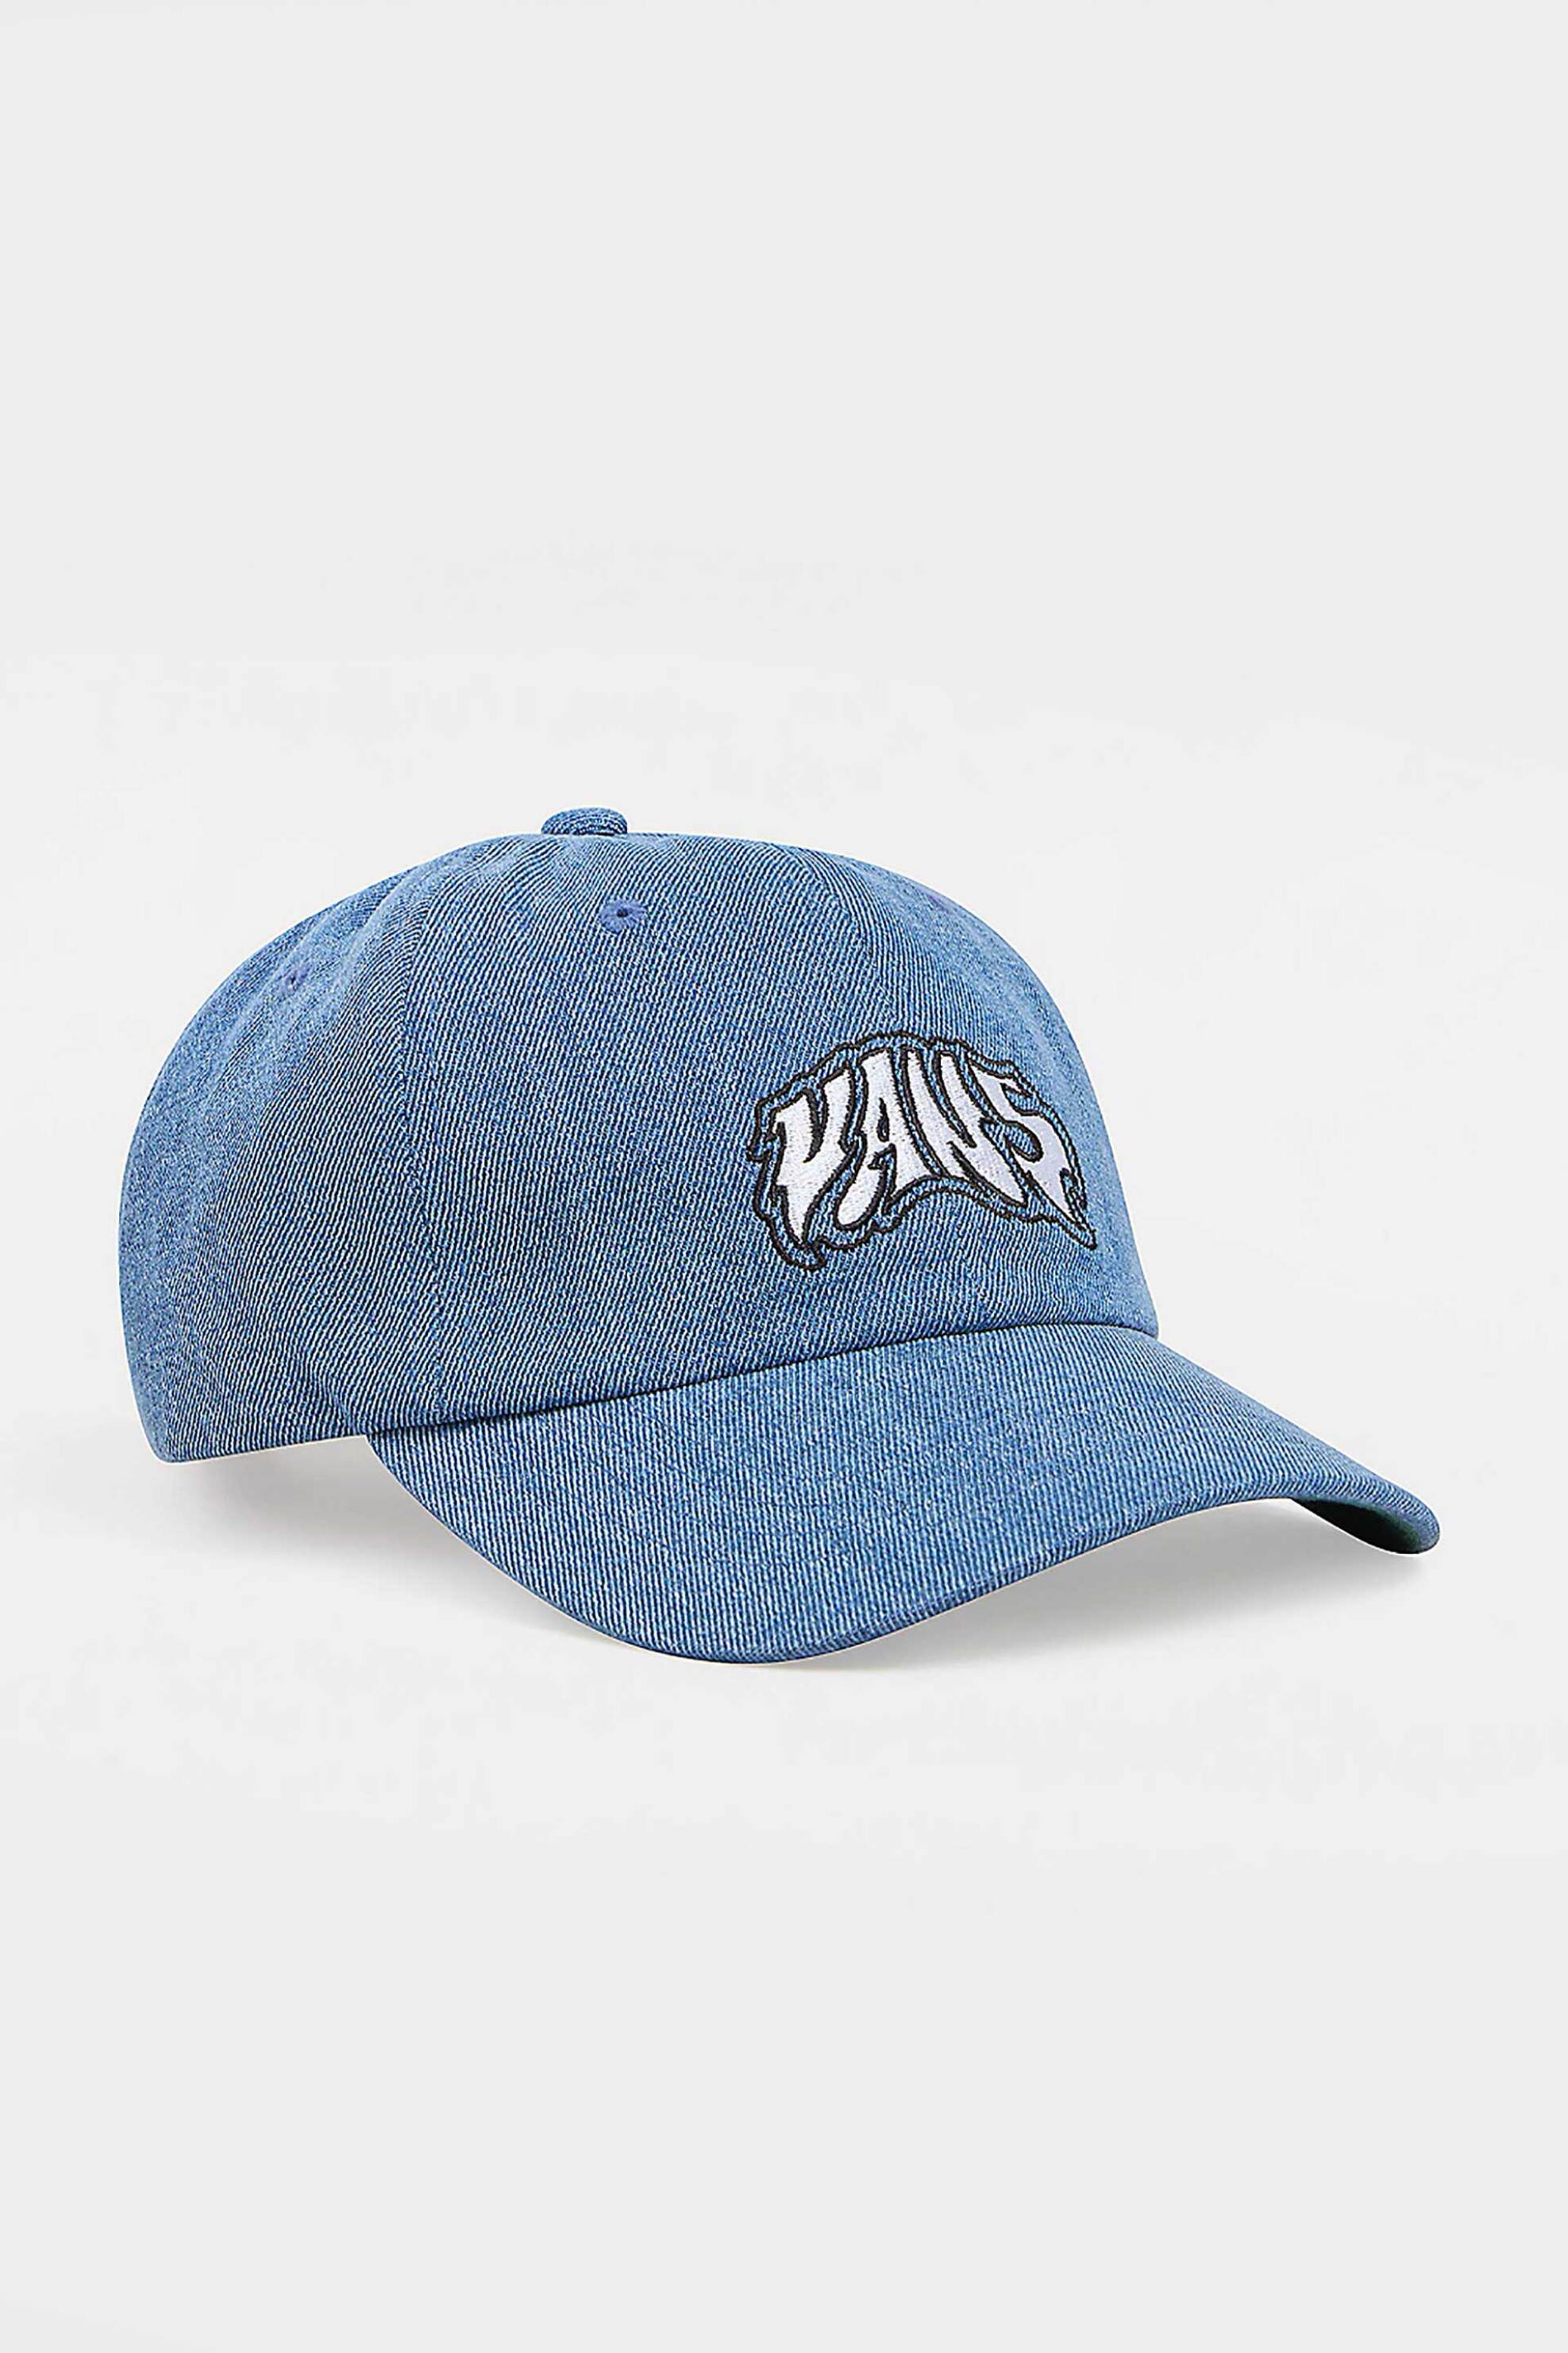 Ανδρική Μόδα > Ανδρικά Αξεσουάρ > Ανδρικά Καπέλα & Σκούφοι Vans ανδρικό καπέλο jockey βαμβακερό με contrast κεντημένο λογότυπο "Prowler Curved Bill" - VN000GKB7W61 Denim Blue